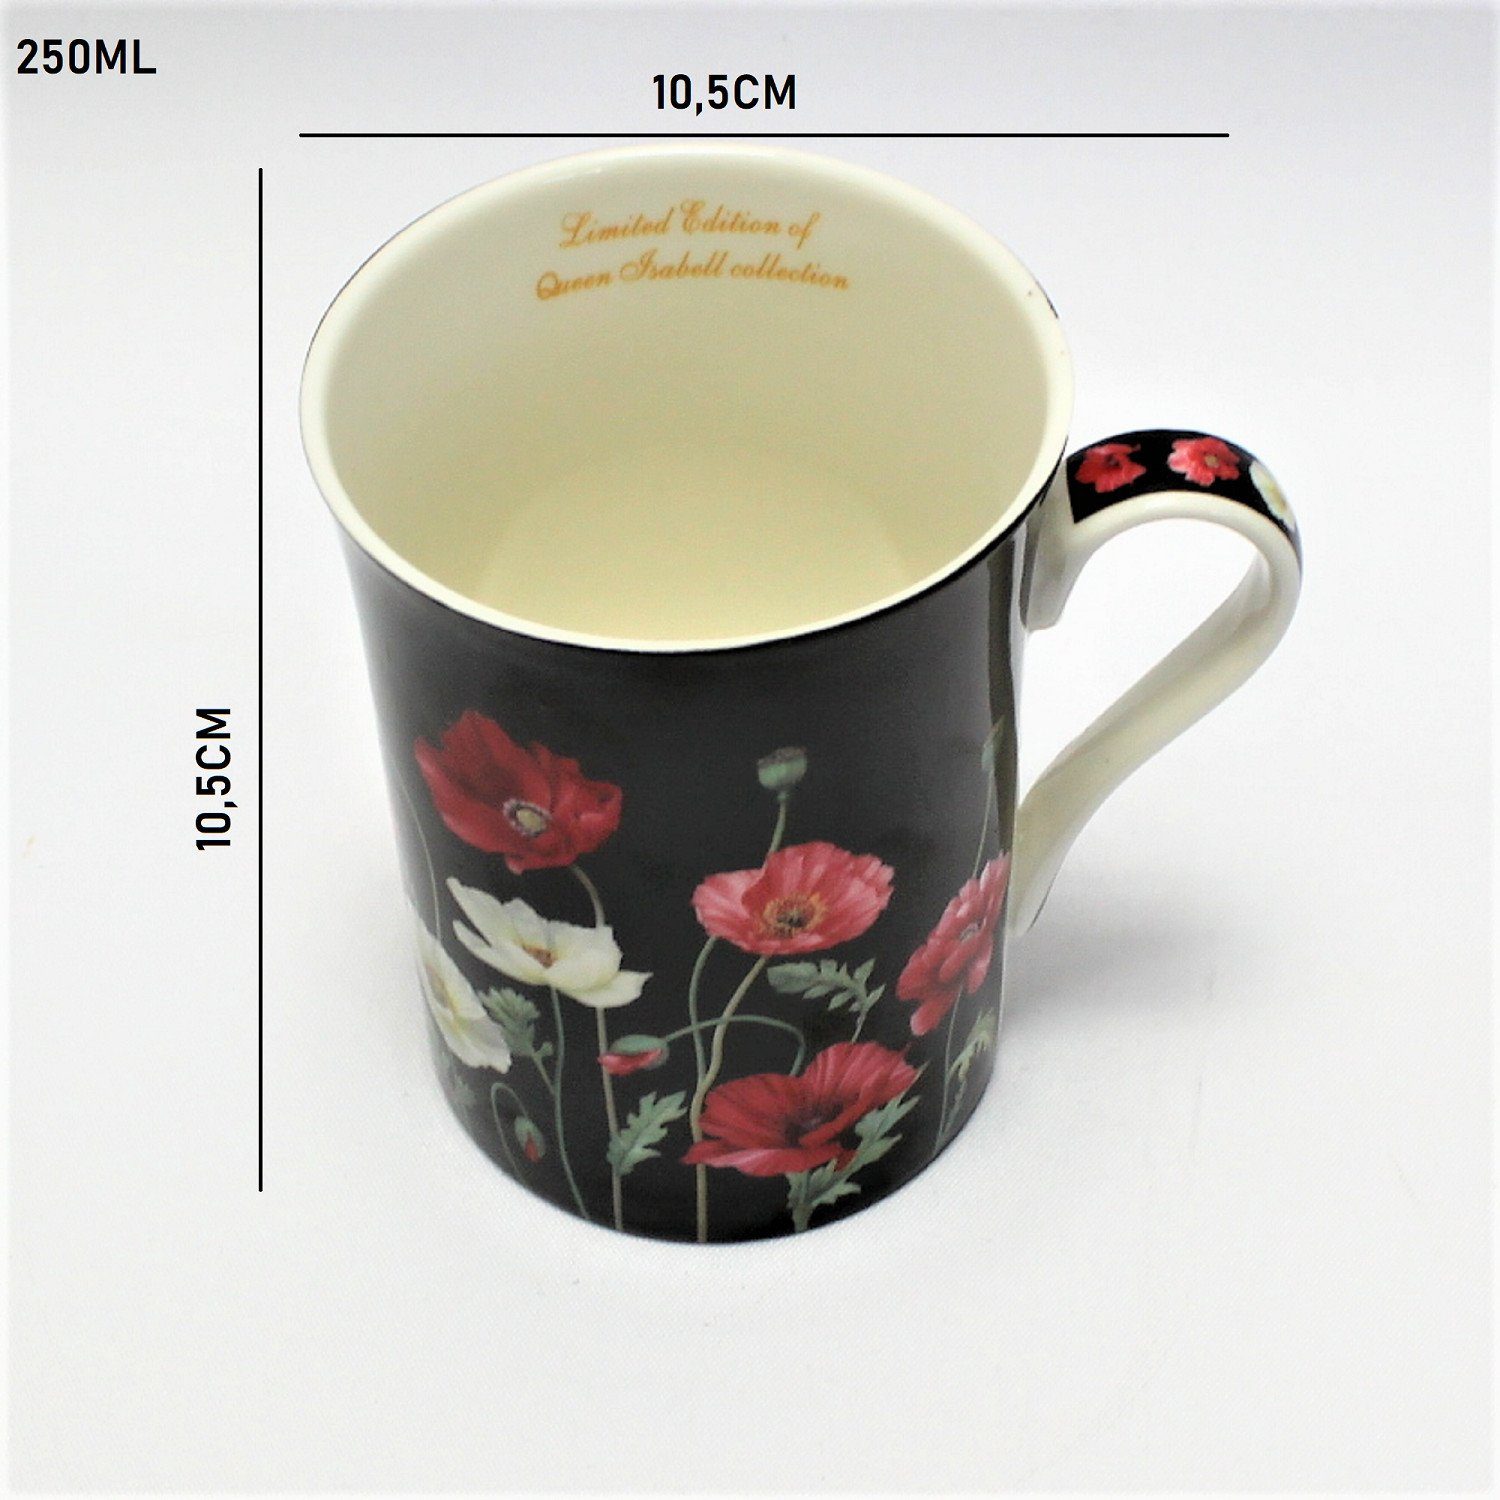 Queen Isabell Becher Porzellan Kaffeetasse aus W8PB53-23250